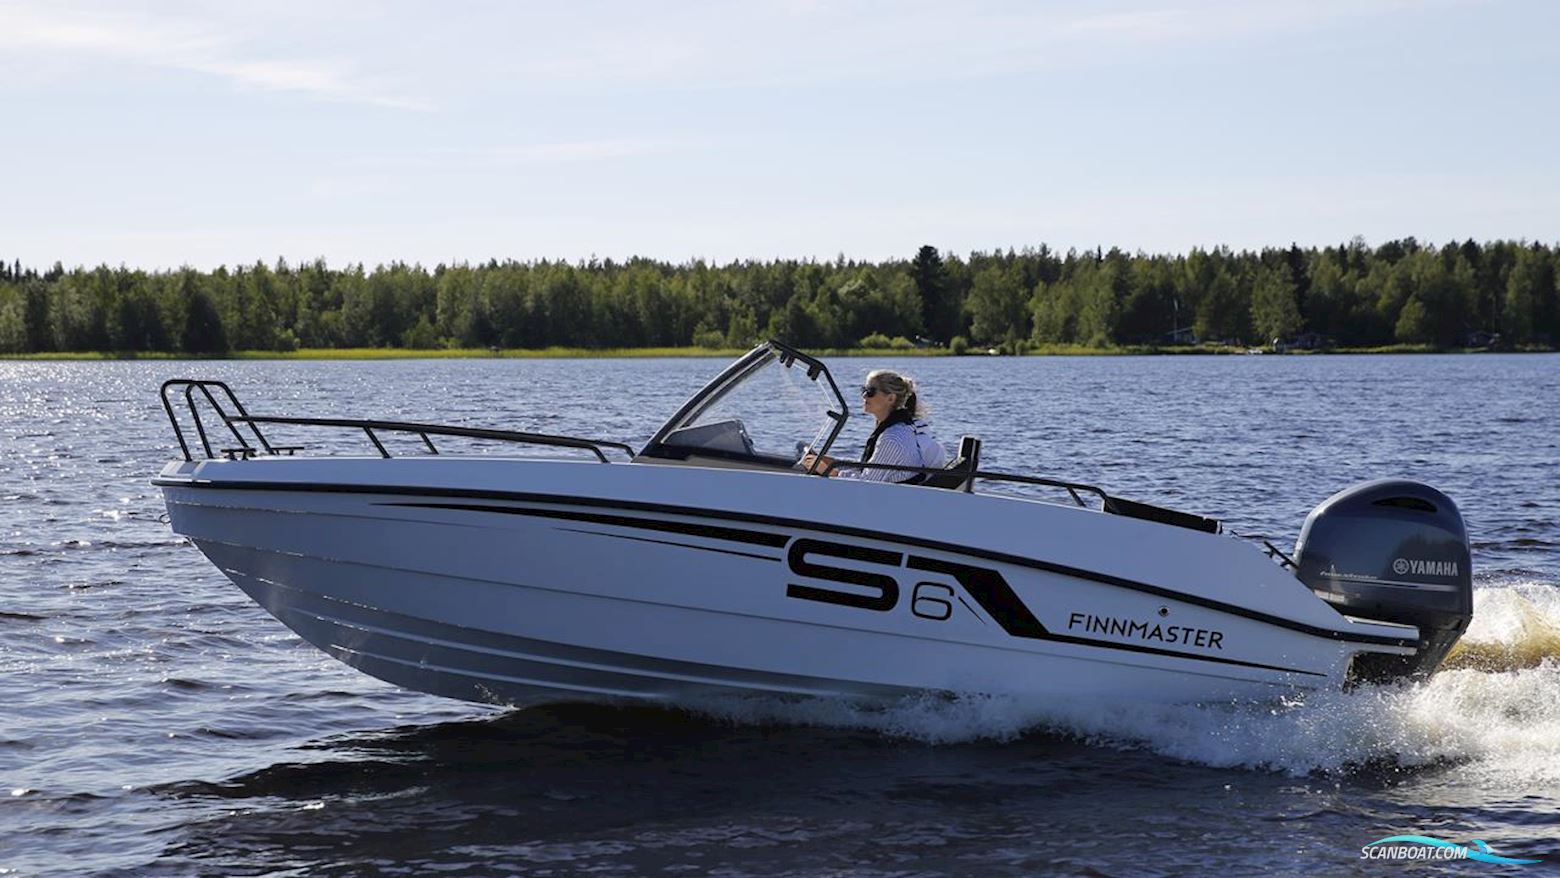 Finnmaster S6 Motorbåd 2023, med Yamaha motor, Sverige